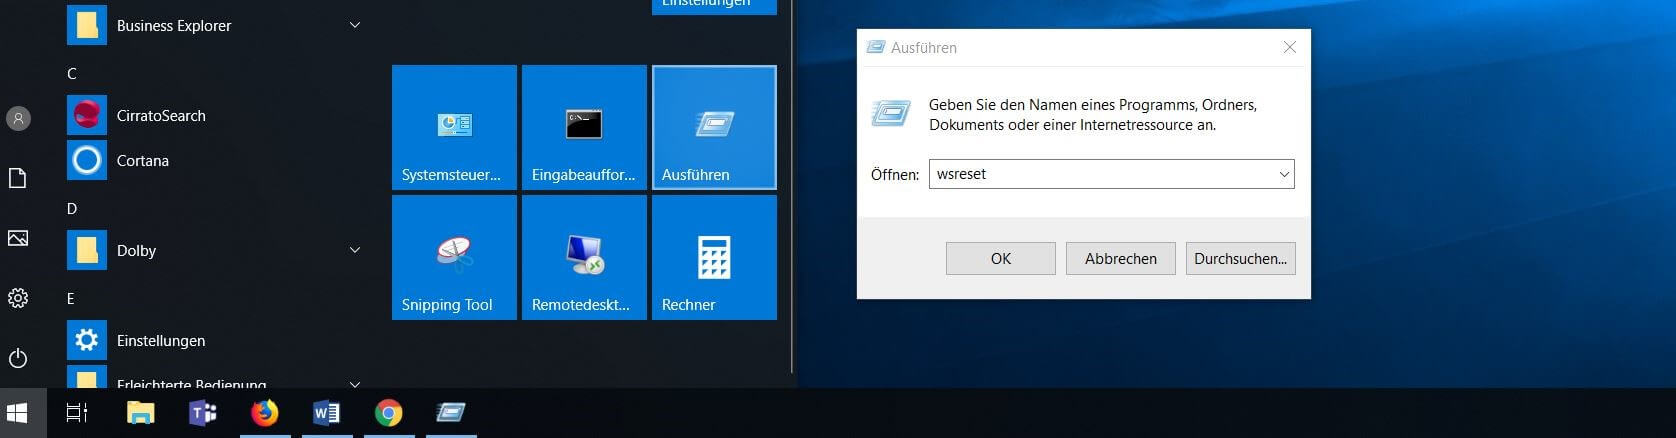 Windows 10: Start von wsreset via „Ausführen“